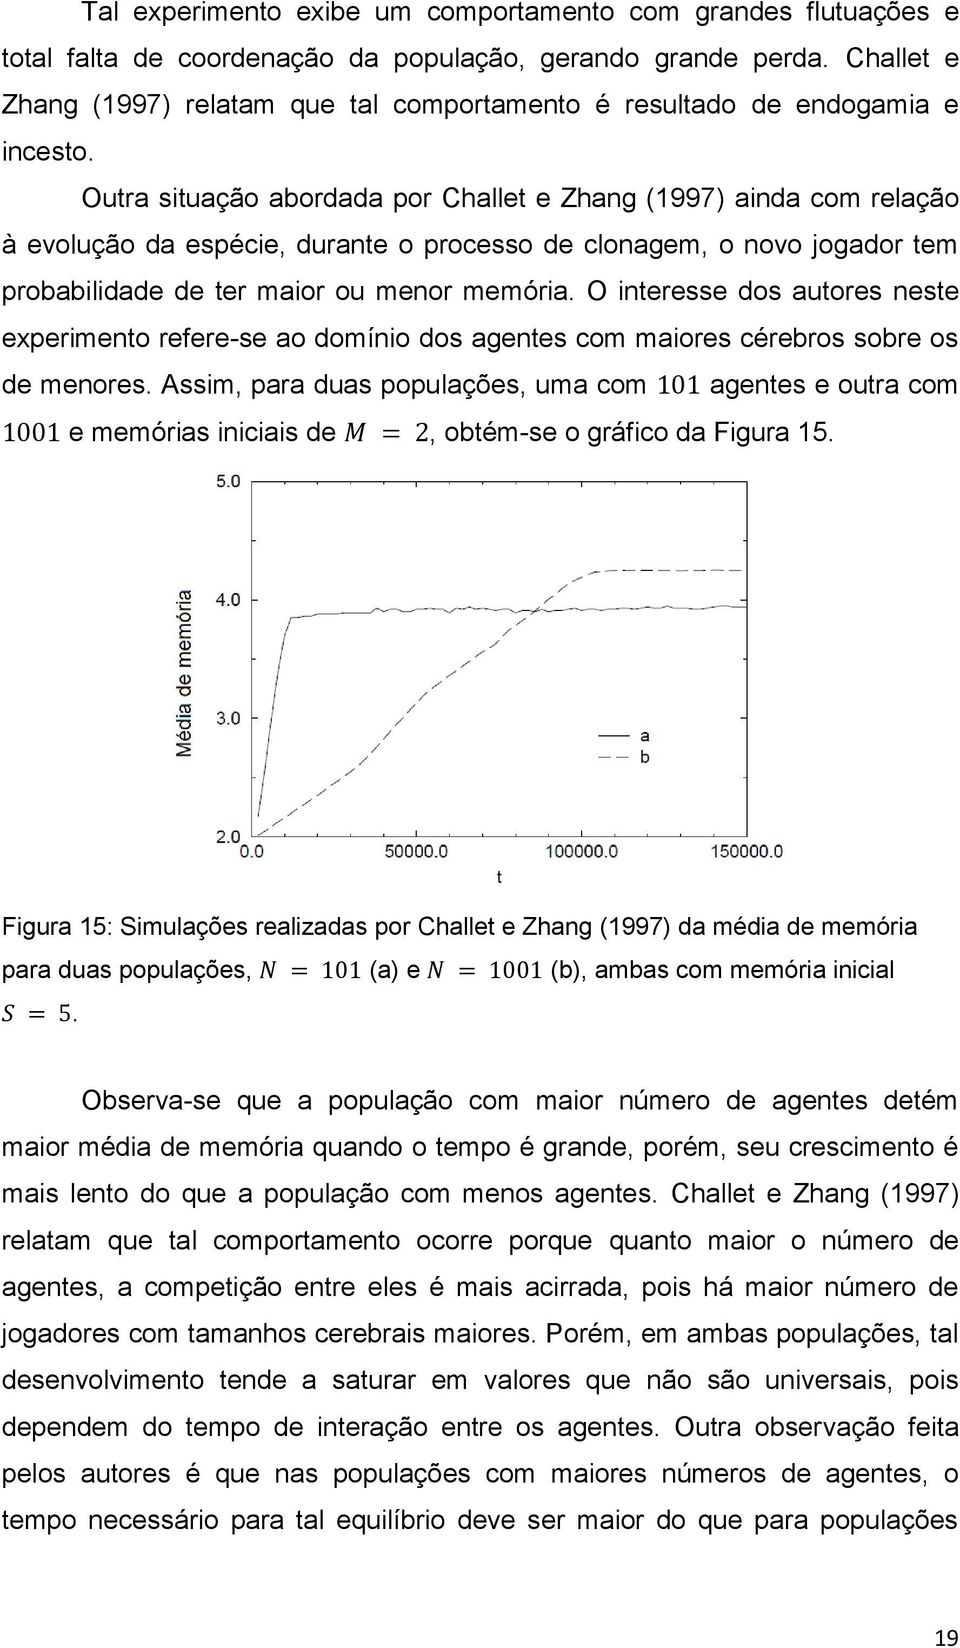 Outra situação abordada por Challet e Zhang (1997) ainda com relação à evolução da espécie, durante o processo de clonagem, o novo jogador tem probabilidade de ter maior ou menor memória.